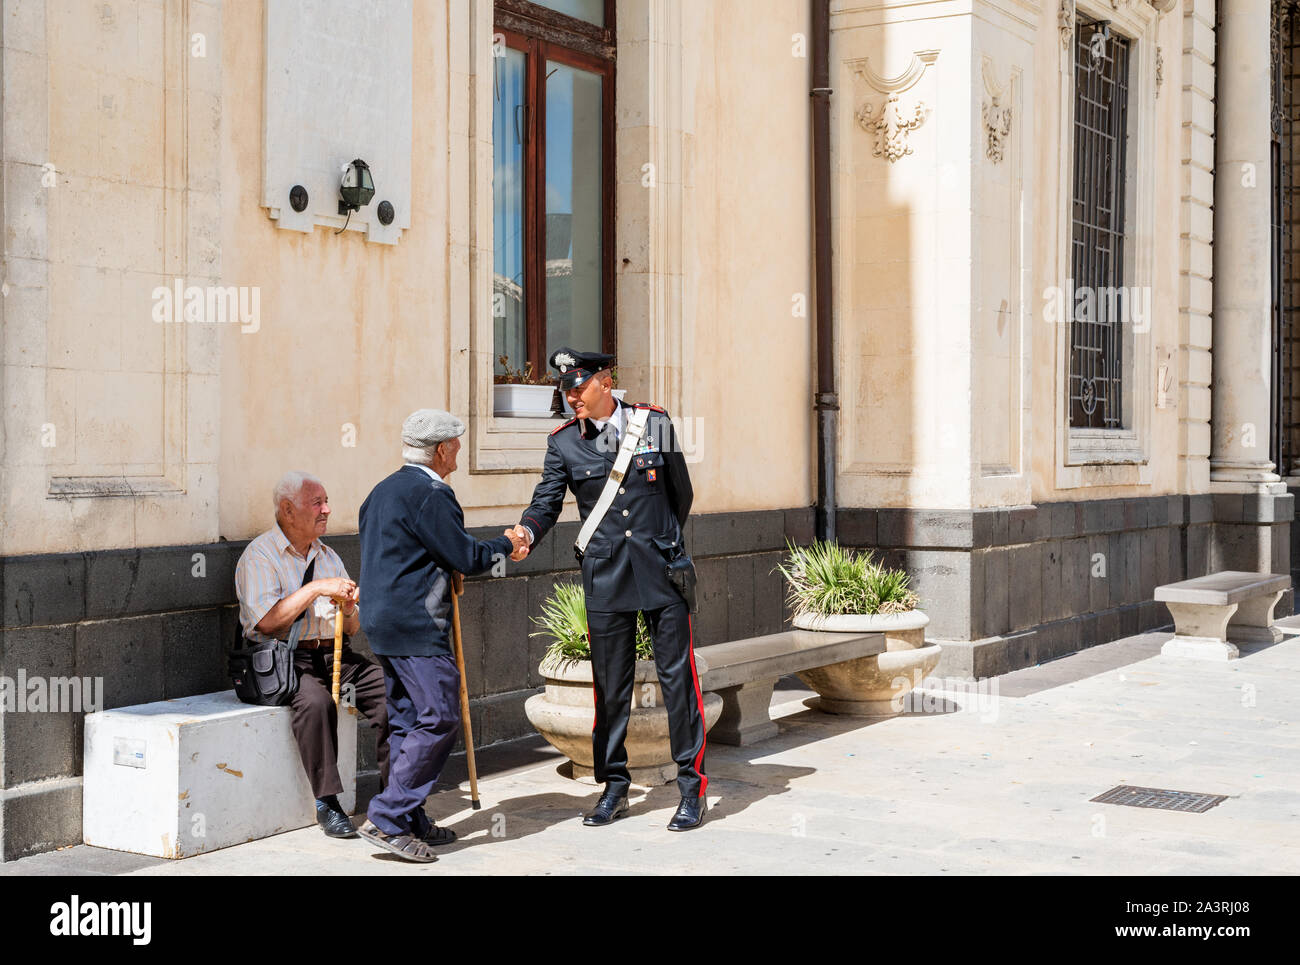 Syrakus Sizilien/Italien - 04 Oktober 2019: Carabinieri mit zwei ältere Menschen in der Stadt diskutieren Stockfoto